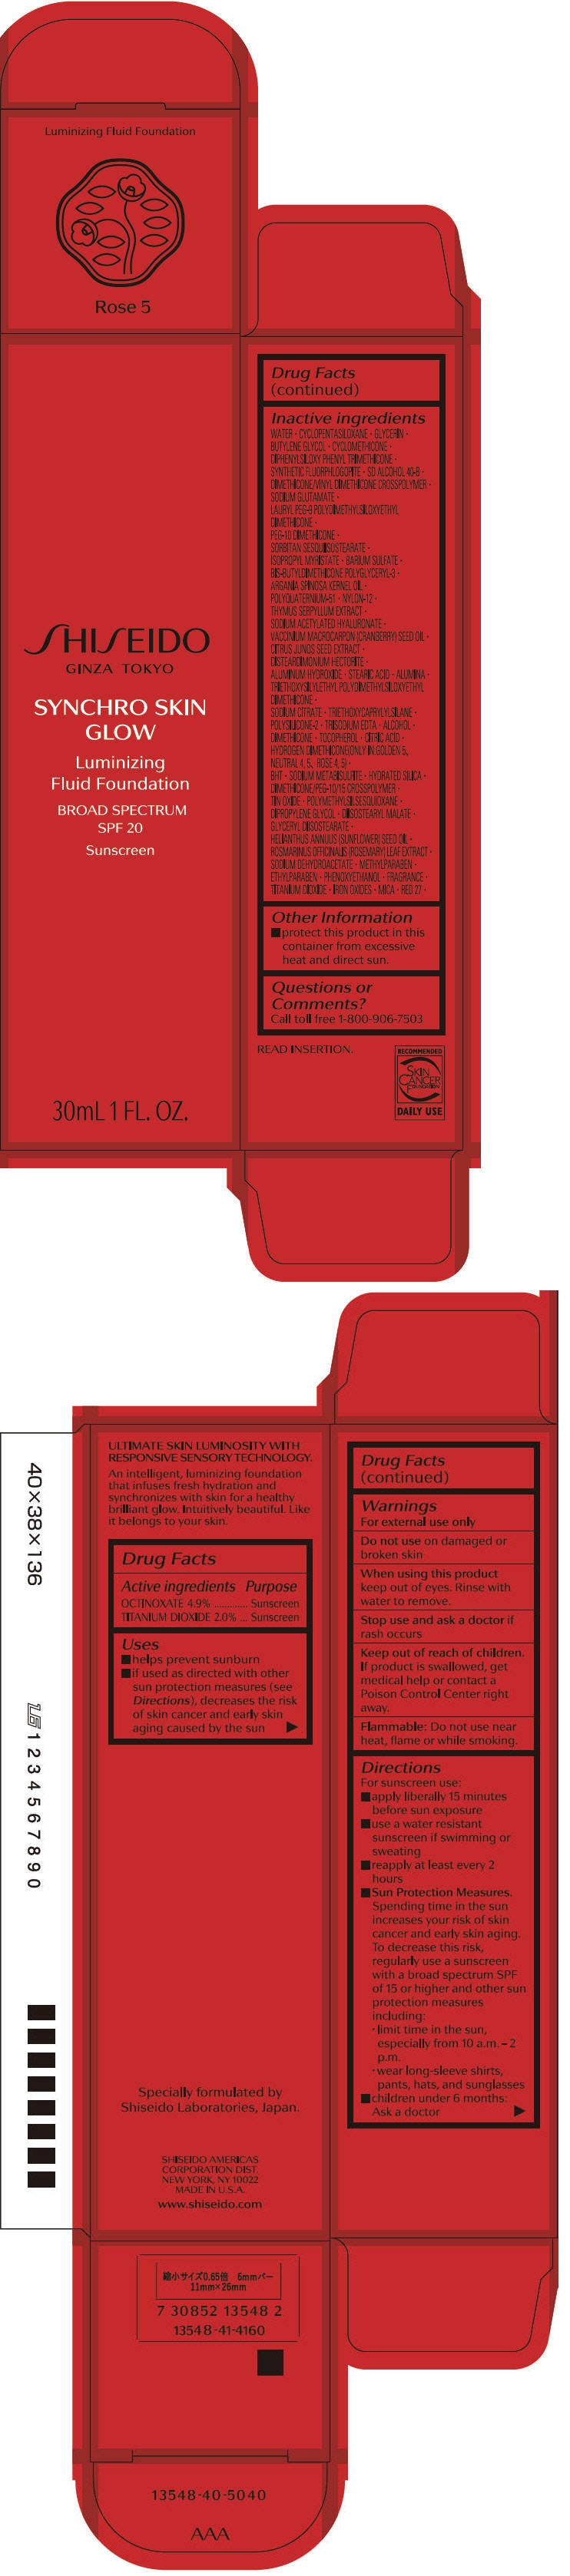 PRINCIPAL DISPLAY PANEL - 30 mL Bottle Carton - Rose 5